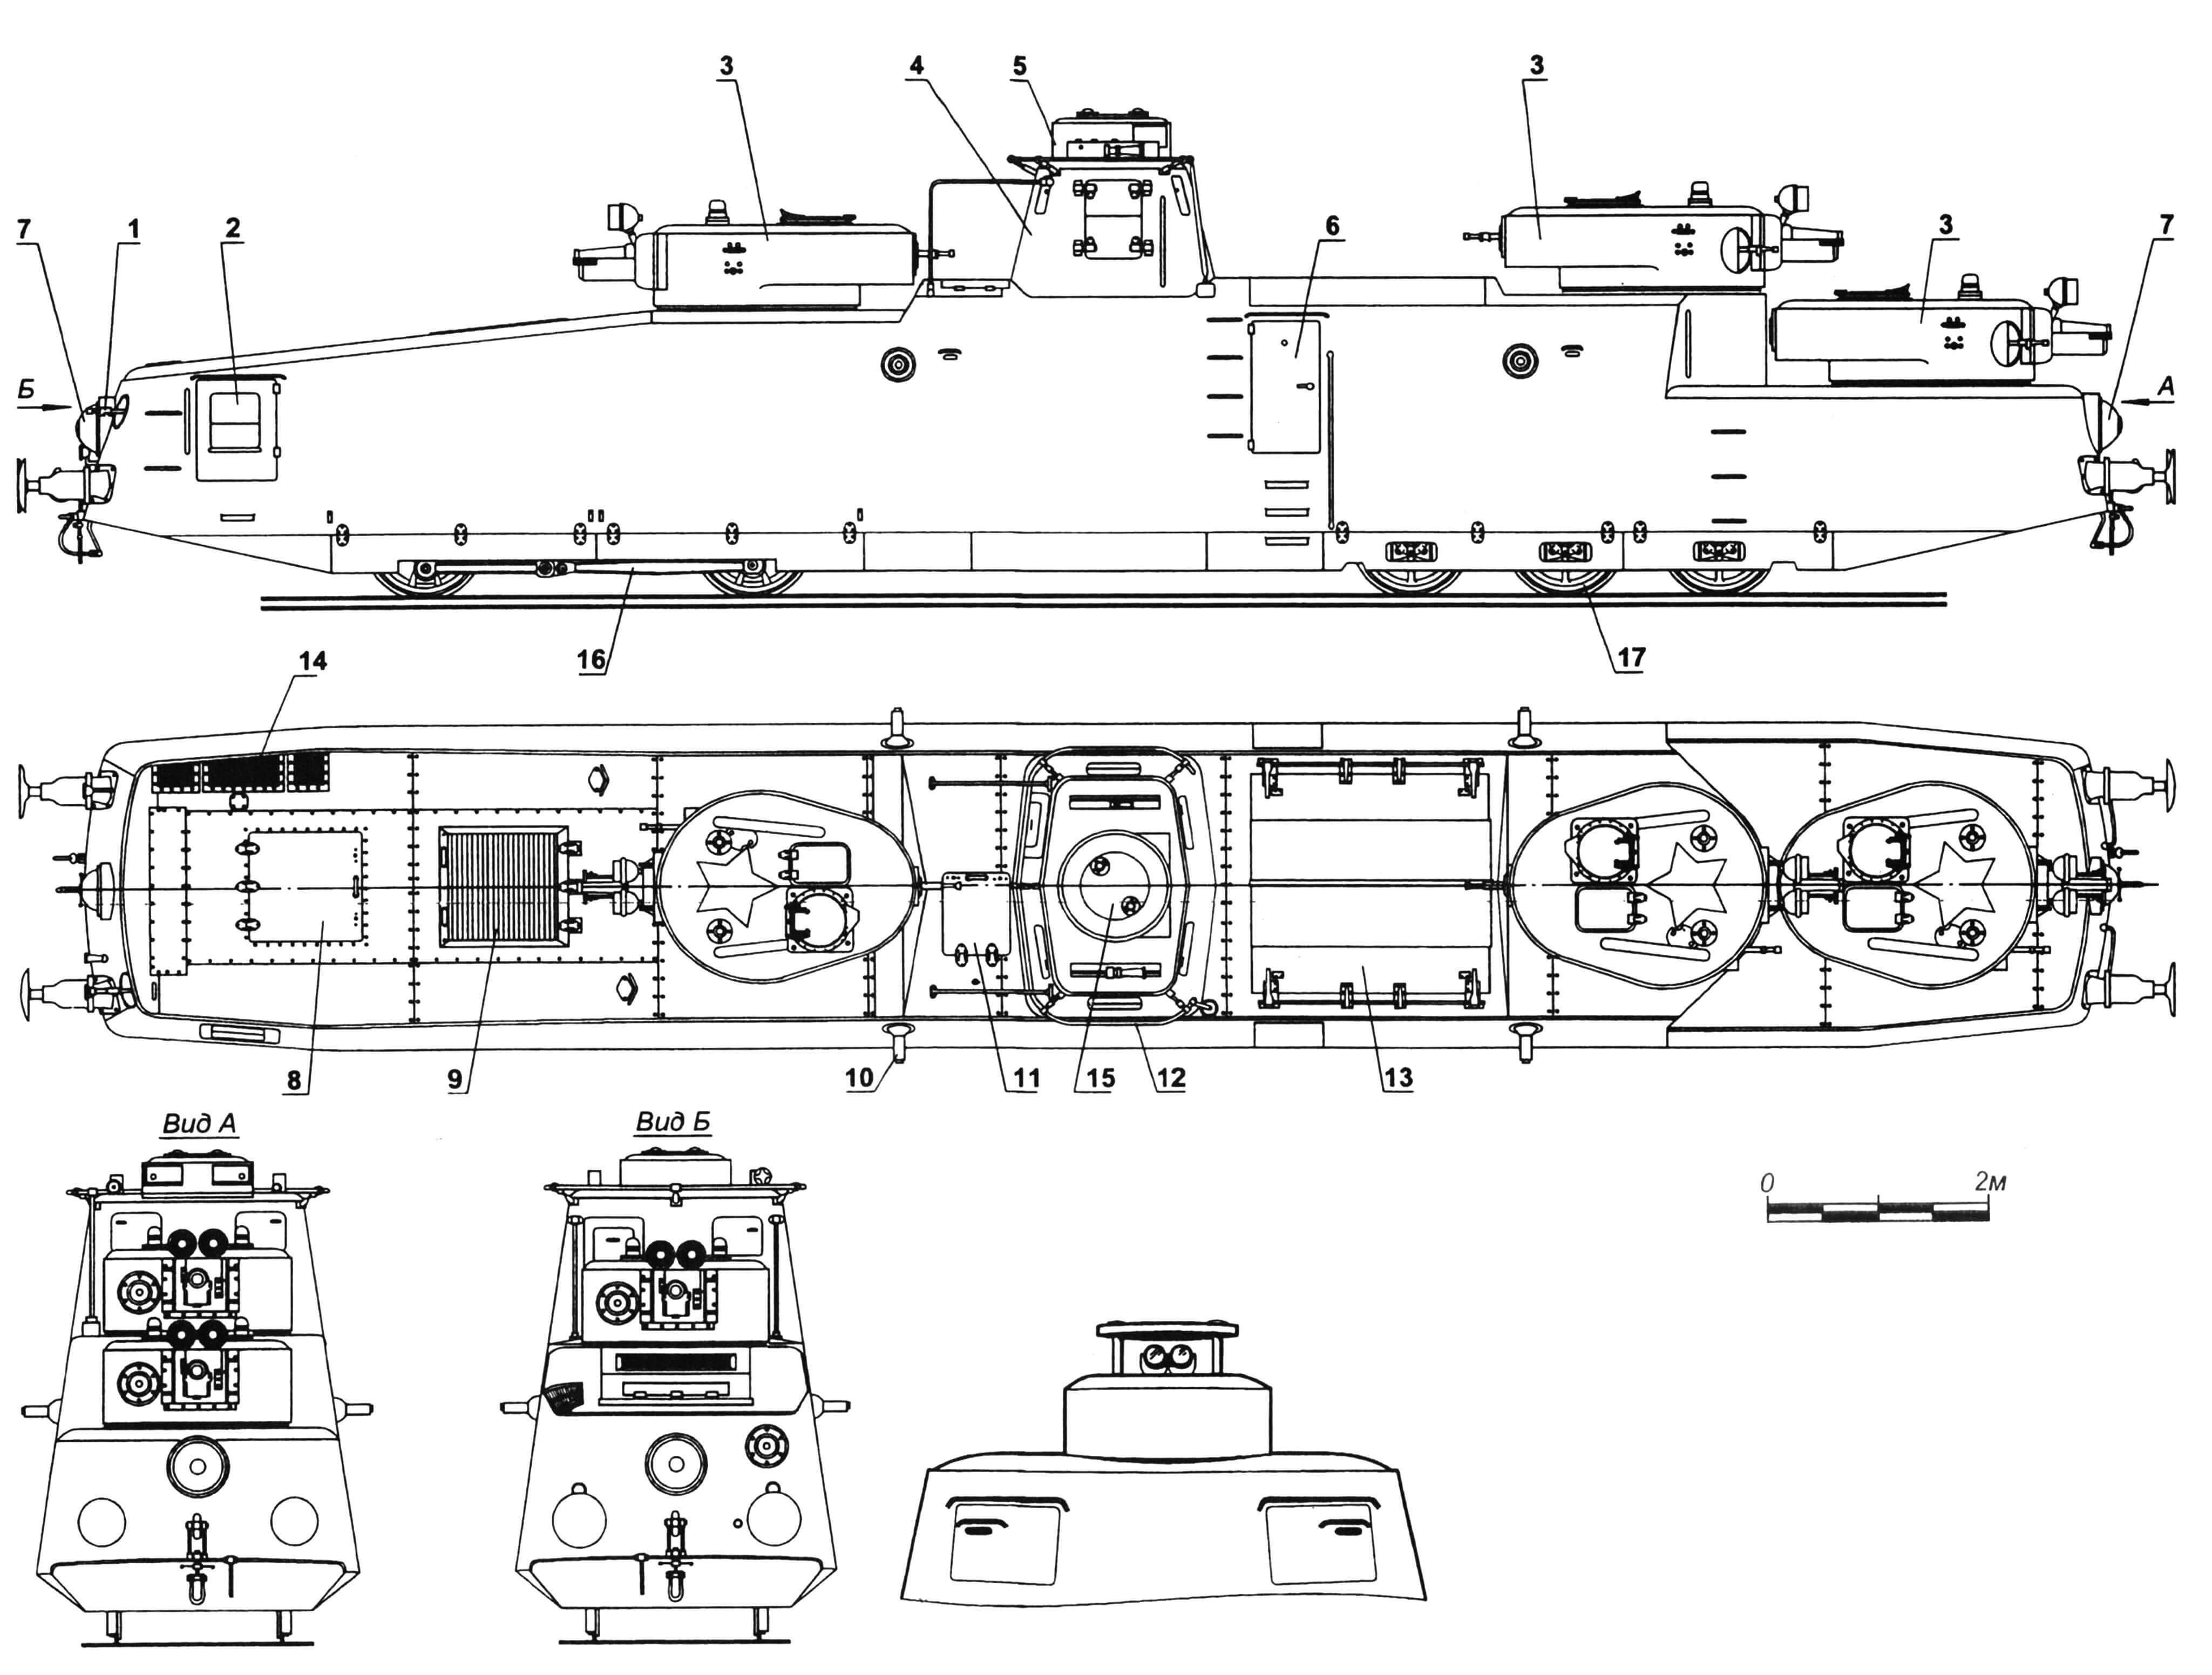 Мотоброневагон МБВ-2: 1 — пулемет кормовой; 2 — дверь для посадки пулеметчика; 3 — башни орудийные; 4 — рубка; 5 — башенка с дальномером; 6 — дверь для посадки экипажа; 7 — кожух фары; 8 — люк для доступа к двигателю; 9 — люк с жалюзи для воздухопритока; 10 — бортовая установка пулемета «максим» (4 шт.); 11 — люк над прожекторным отсеком; 12 — антенна; 13— люк над отсеком с зенитно-пулеметной установкой; 14 — решетка люка над радиатором; 15 — лючок над стереотрубой; 16 — тележка ведущая; 17 — тележка поддерживающая.